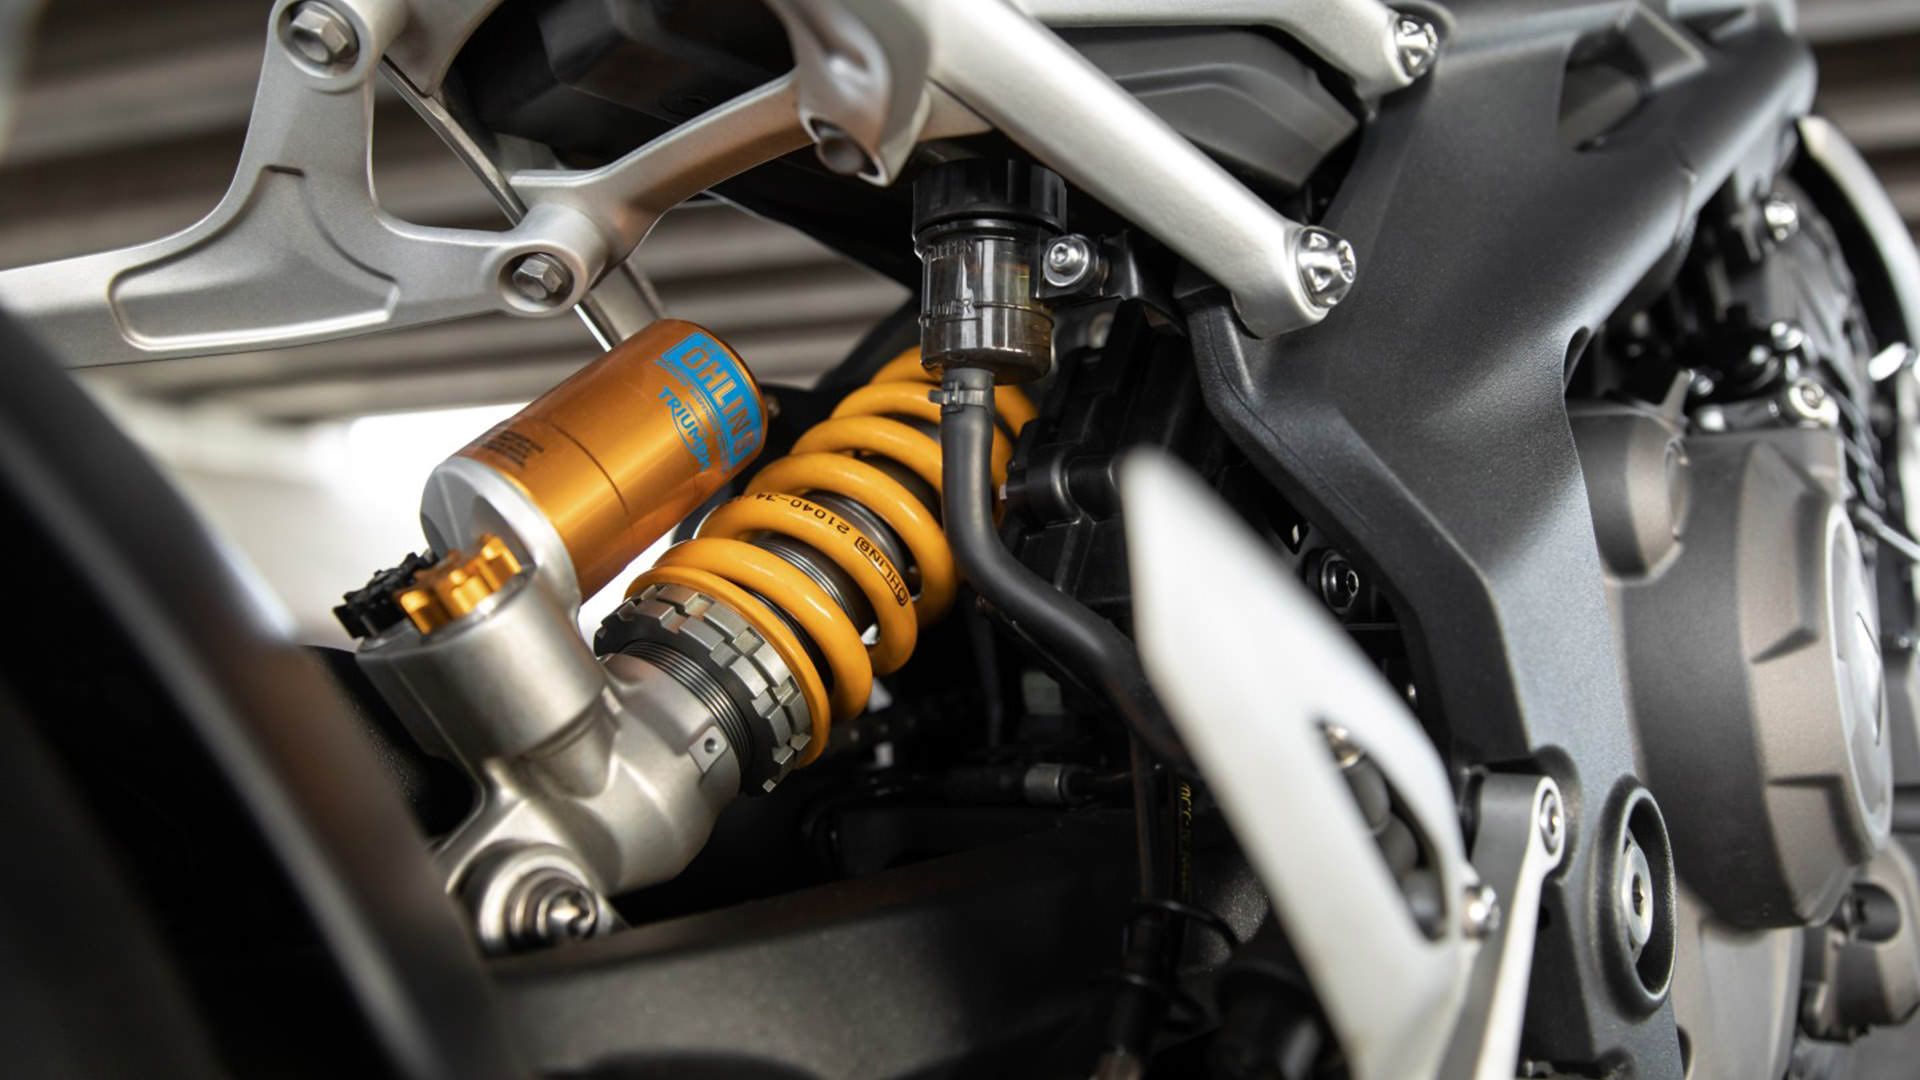 کمک فنر موتورسیکلت تریومف اسپید تریپل 1200 آر اس / Triumph Speed Triple 1200 RS 2021 Motorcycle